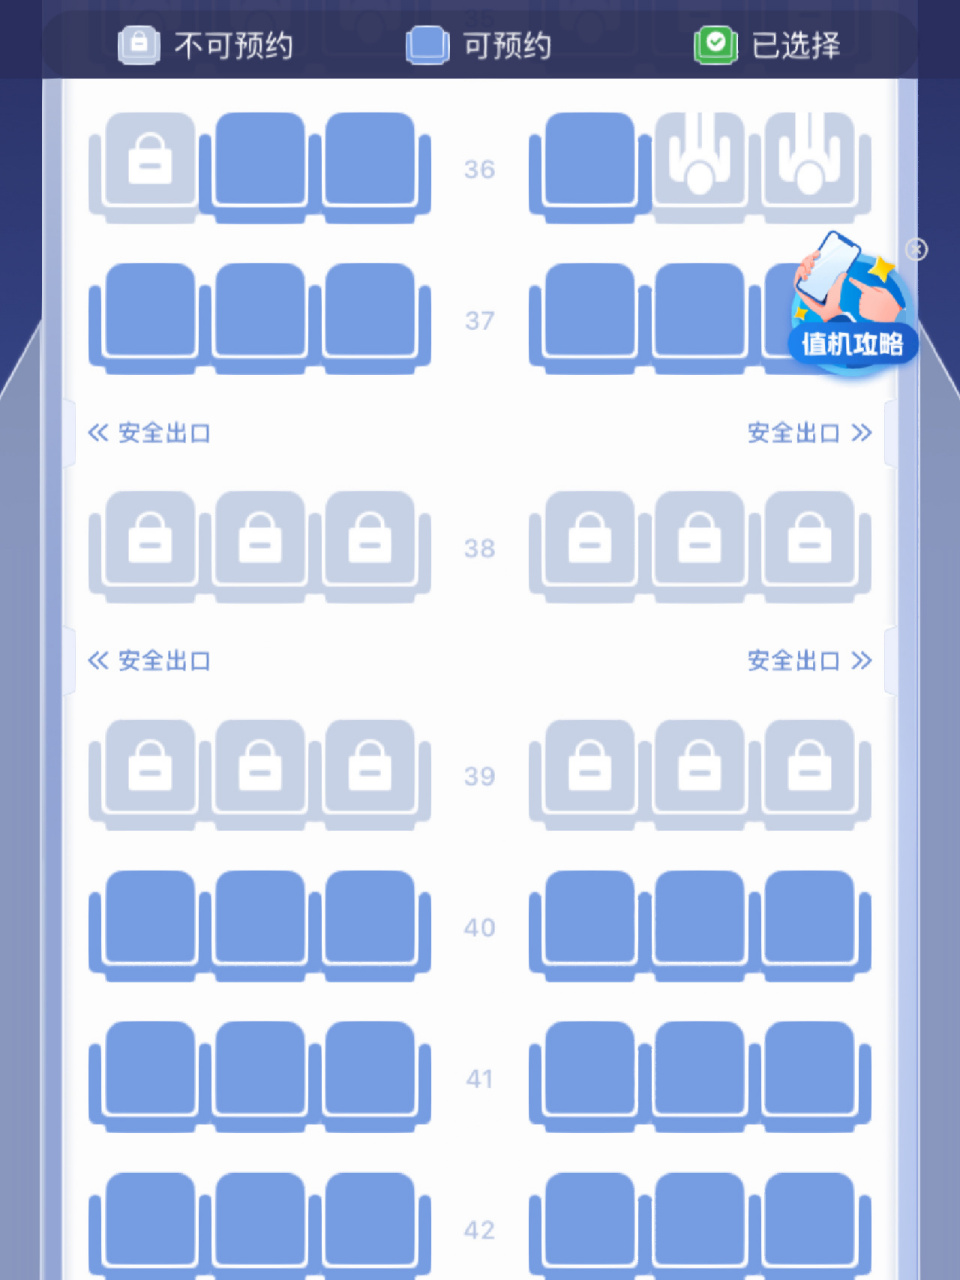 上海航空空客330座位图图片